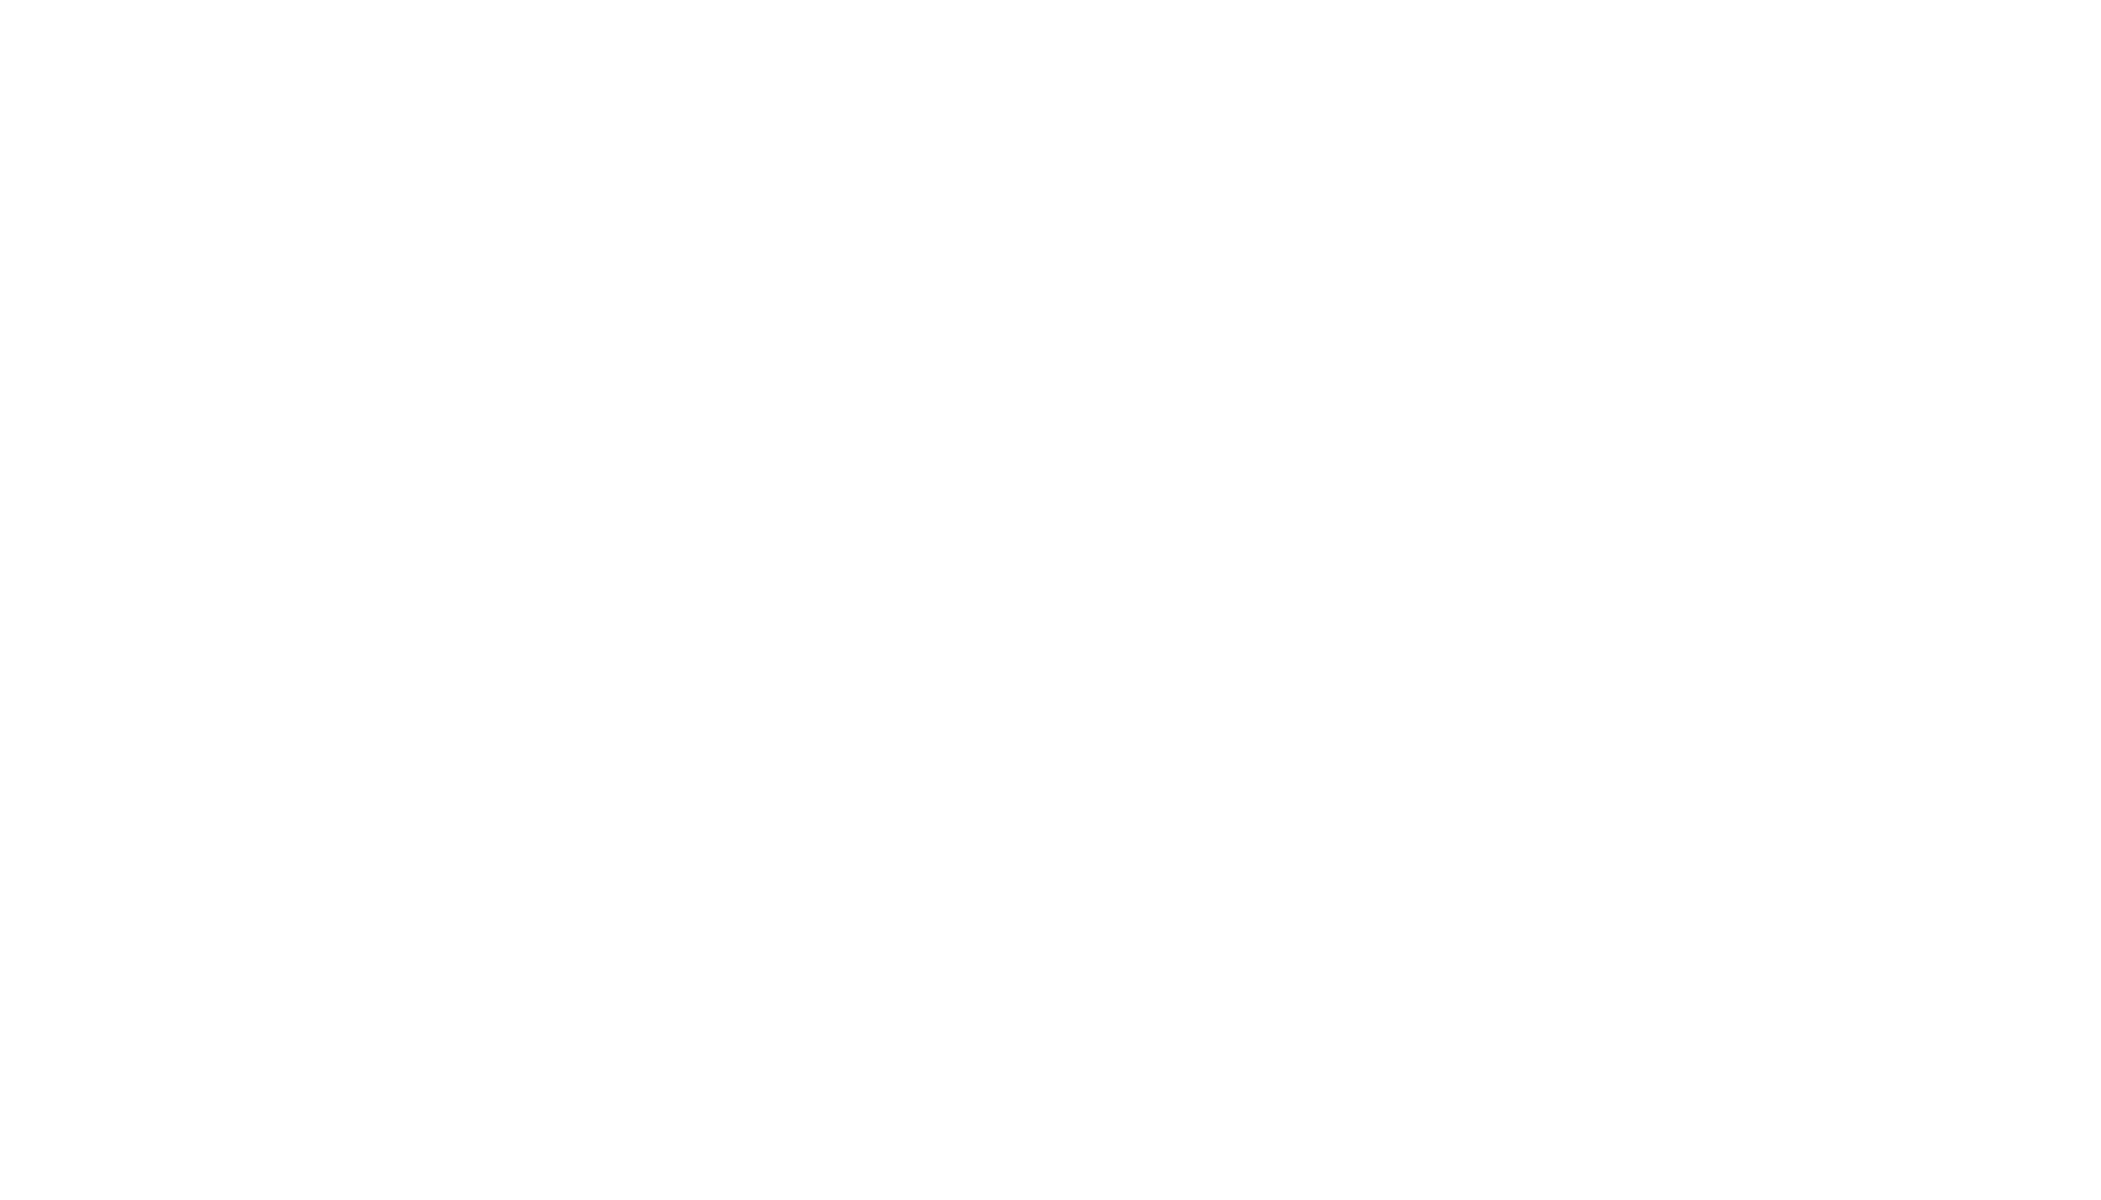 cbts_logo_rgb_reversed_2color